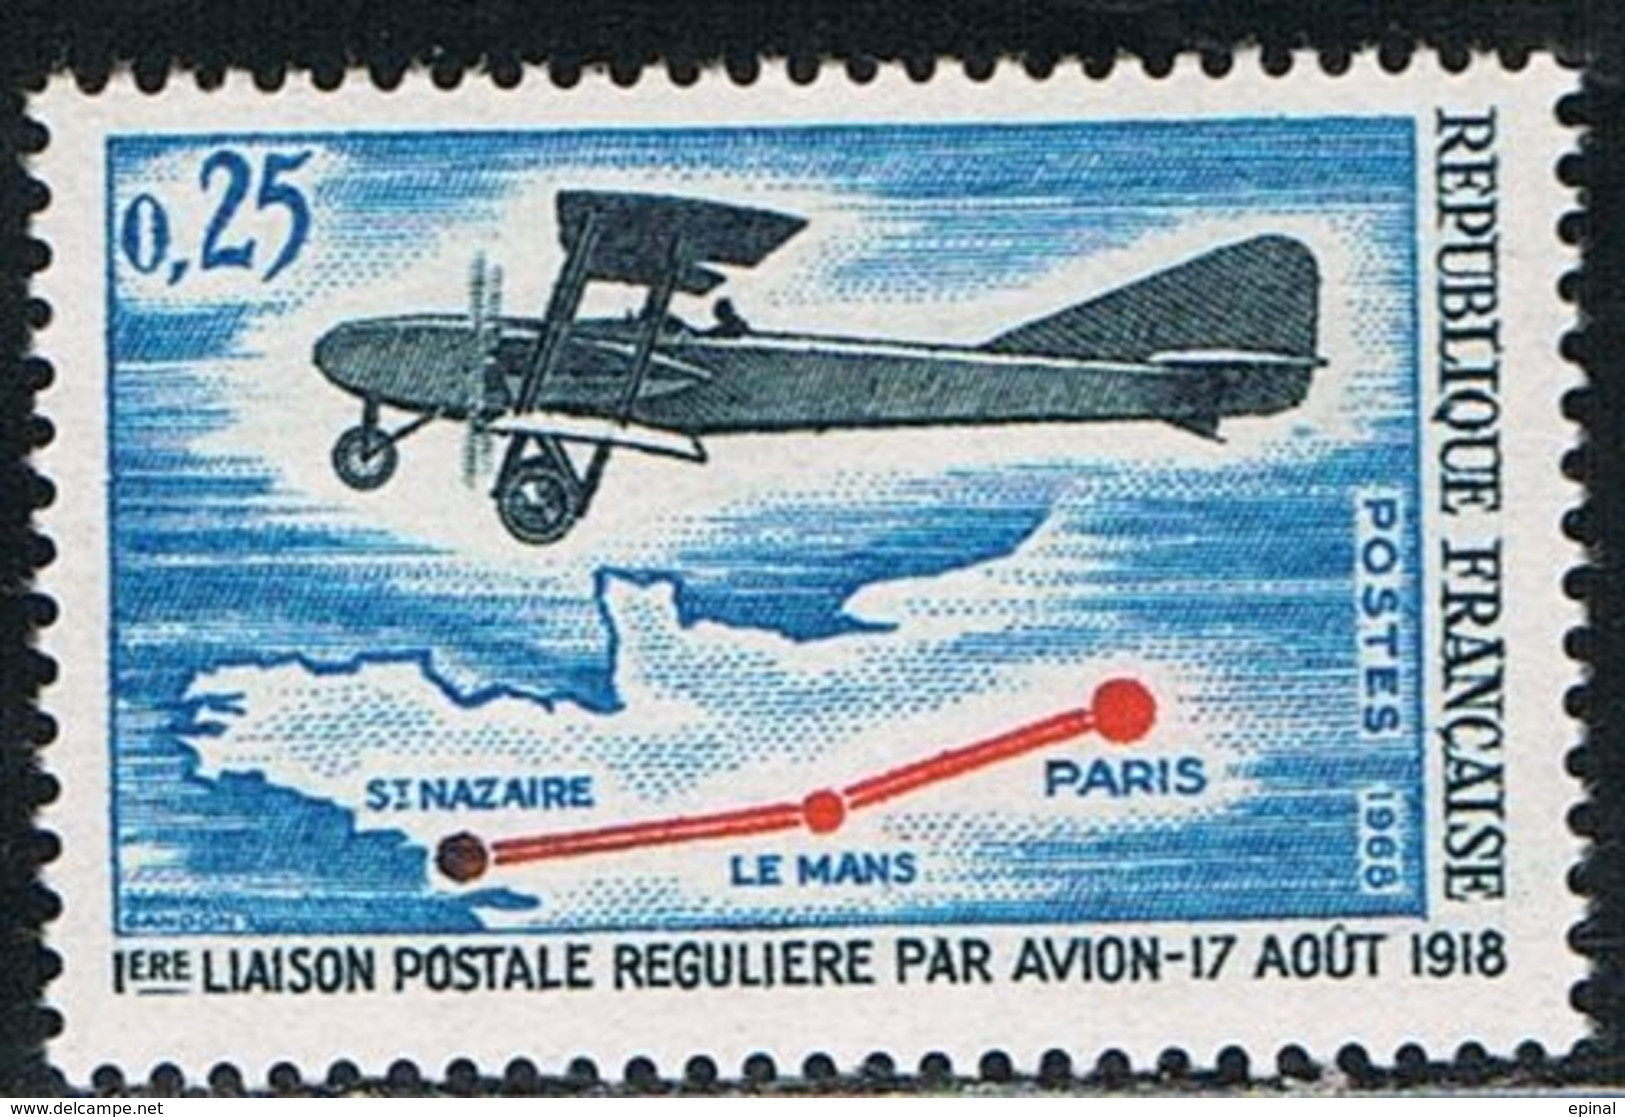 FRANCE : N° 1565 ** (1ère Liaison Postale Régulière Par Avion) - PRIX FIXE - - Ongebruikt